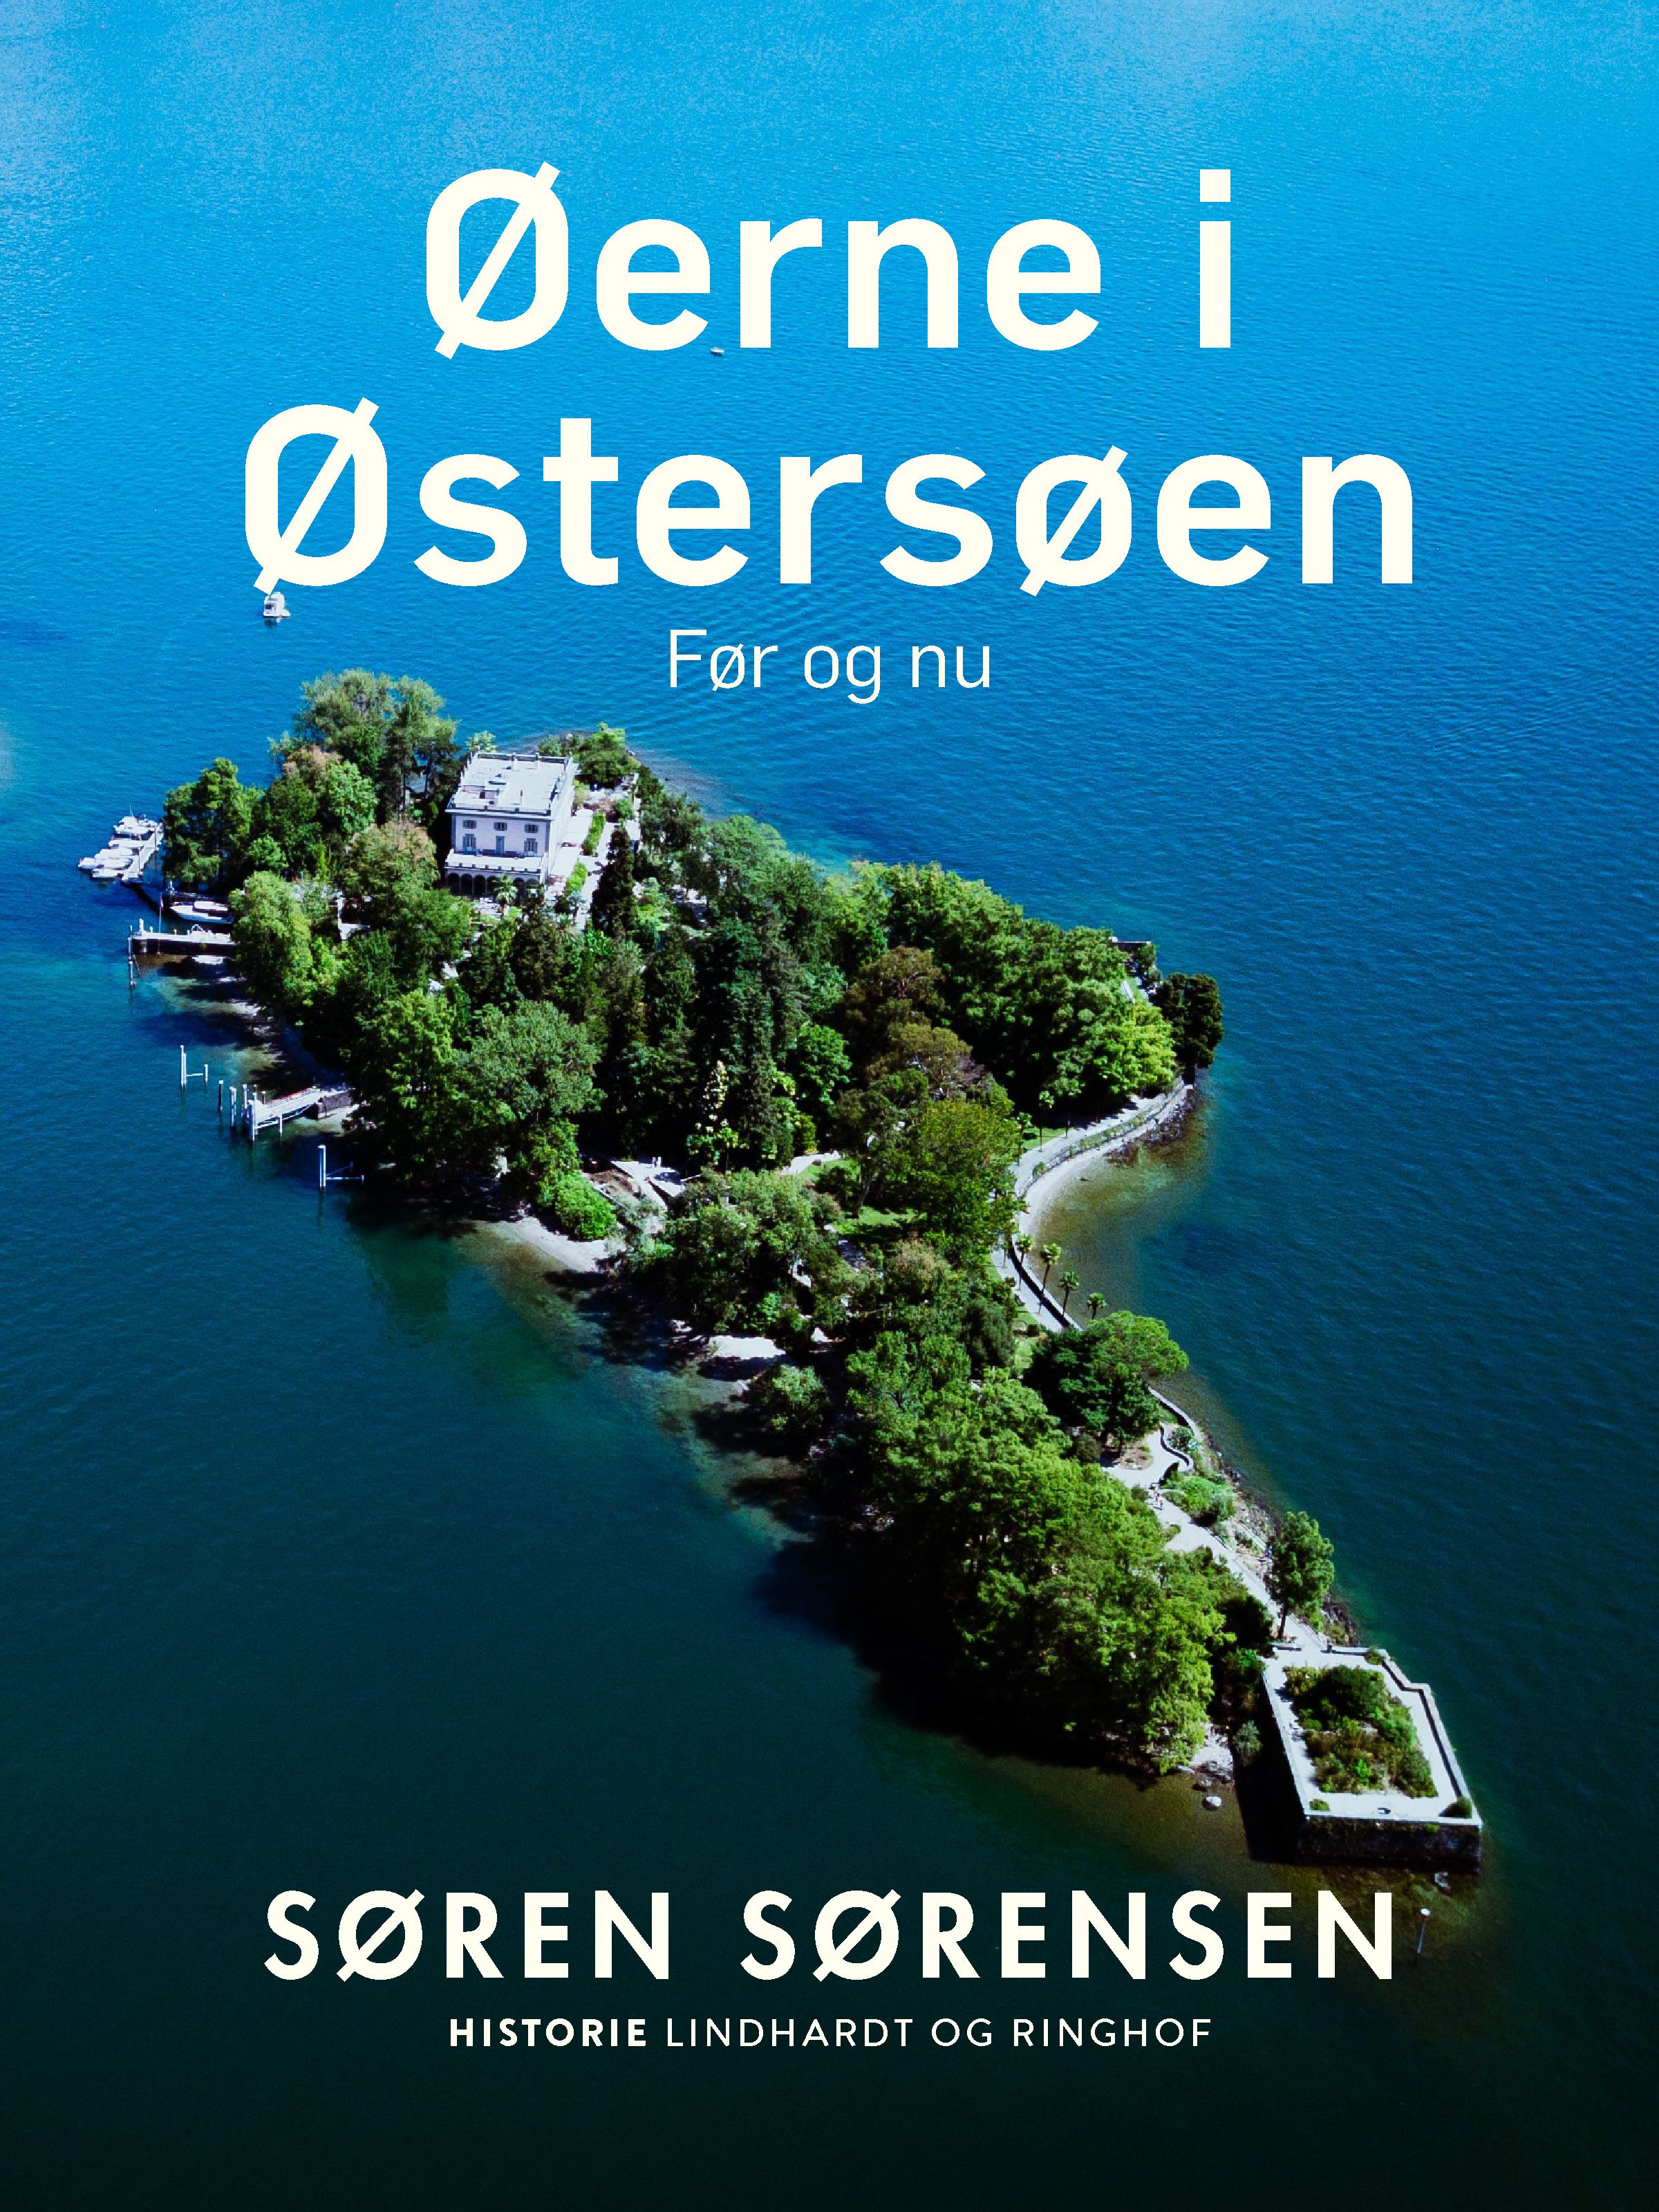 Øerne i Østersøen. Før og nu, e-bog af Søren Sørensen